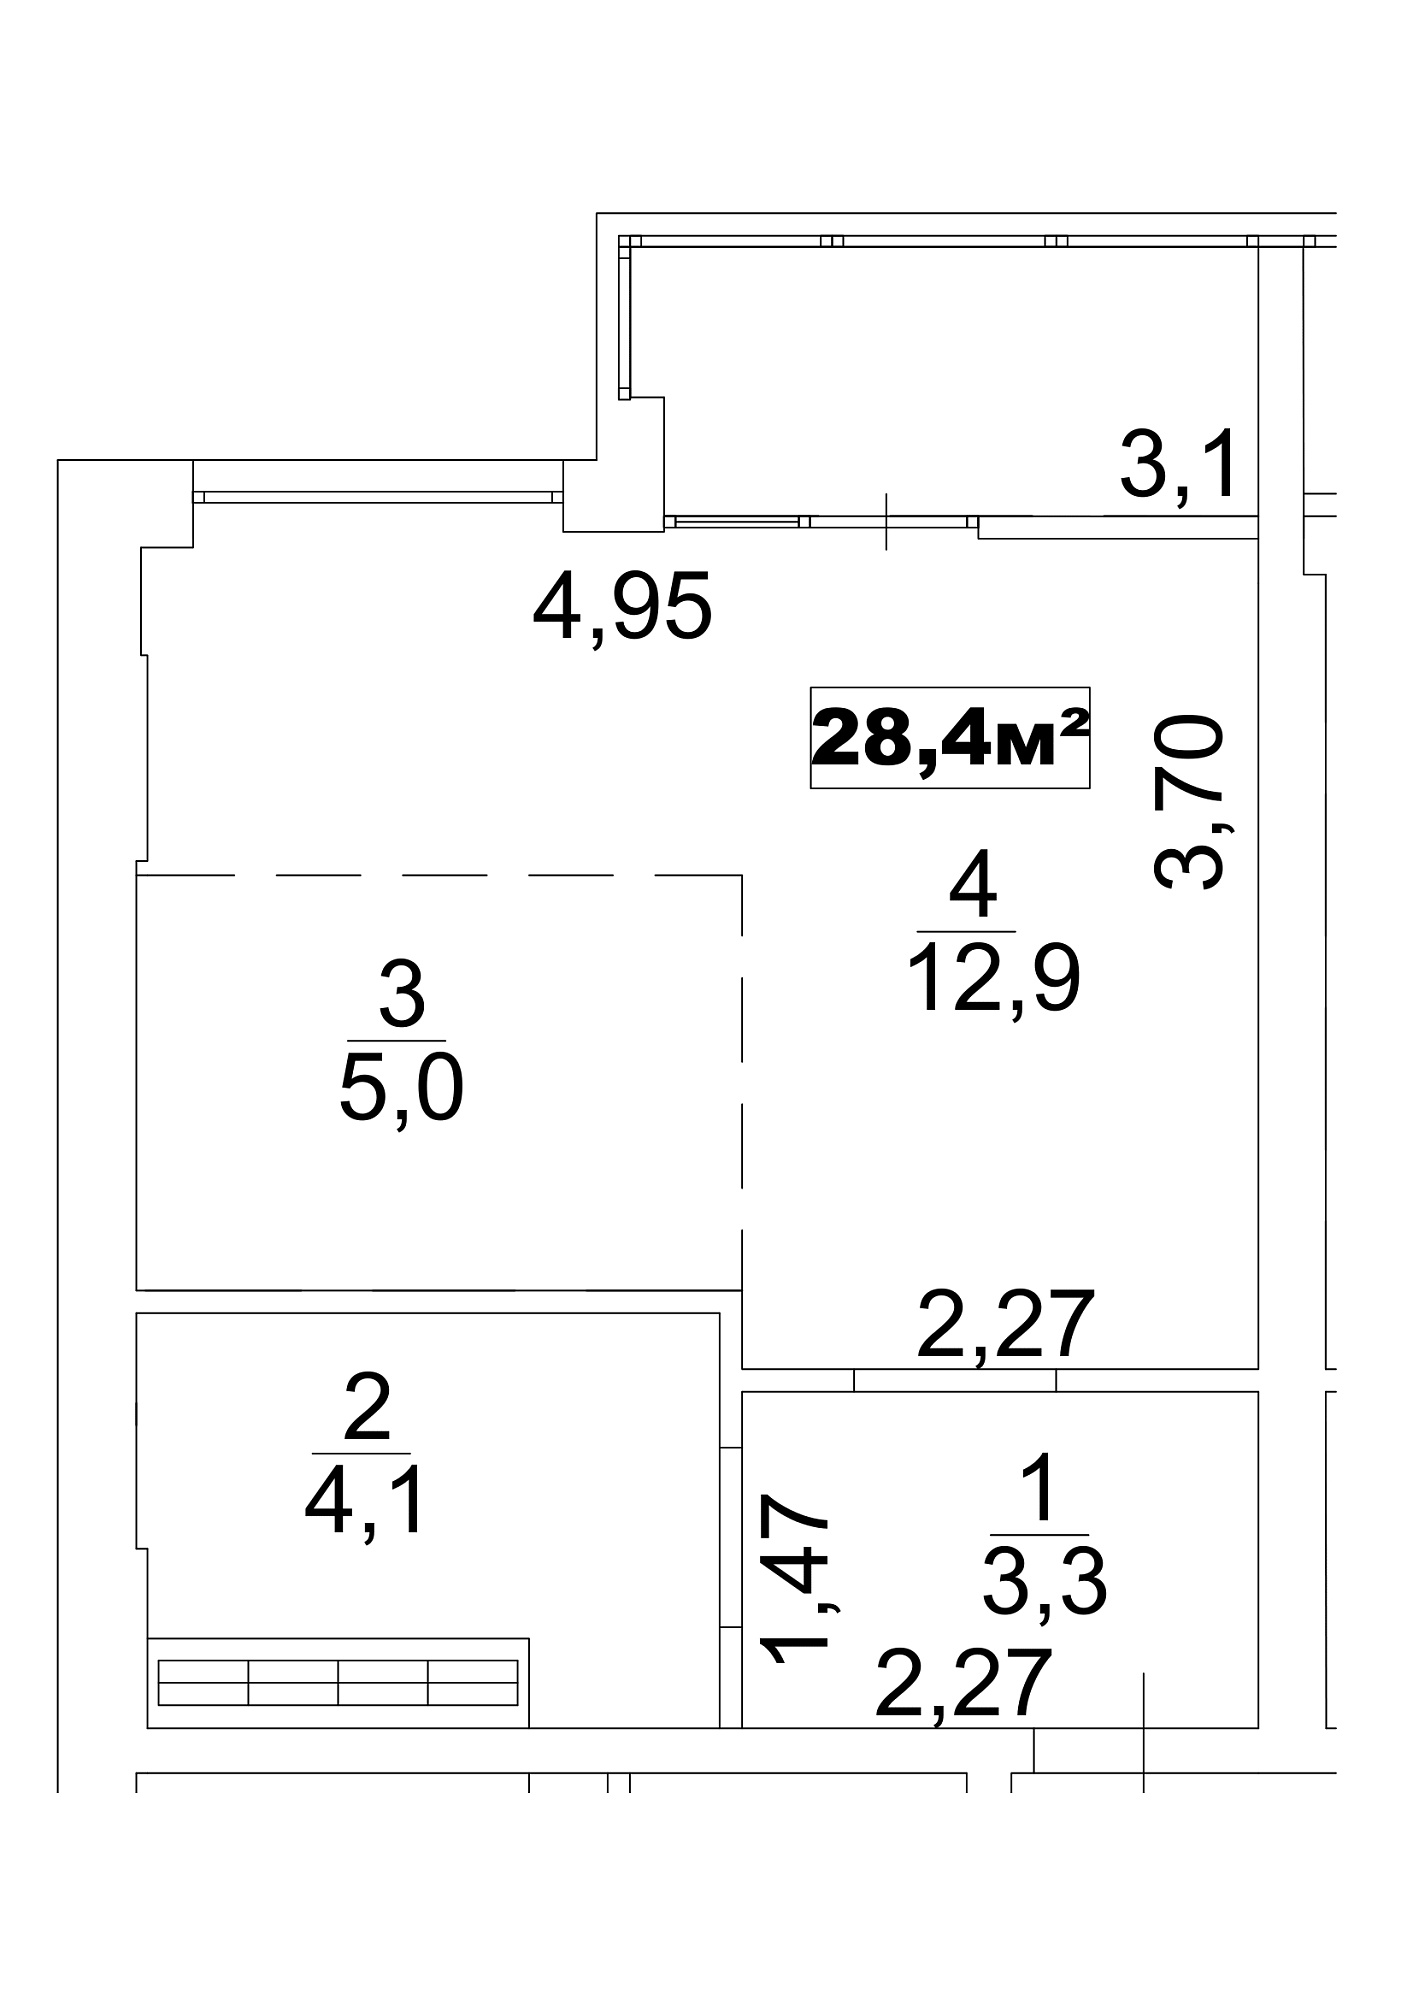 Планування Smart-квартира площею 28.4м2, AB-13-10/0081б.